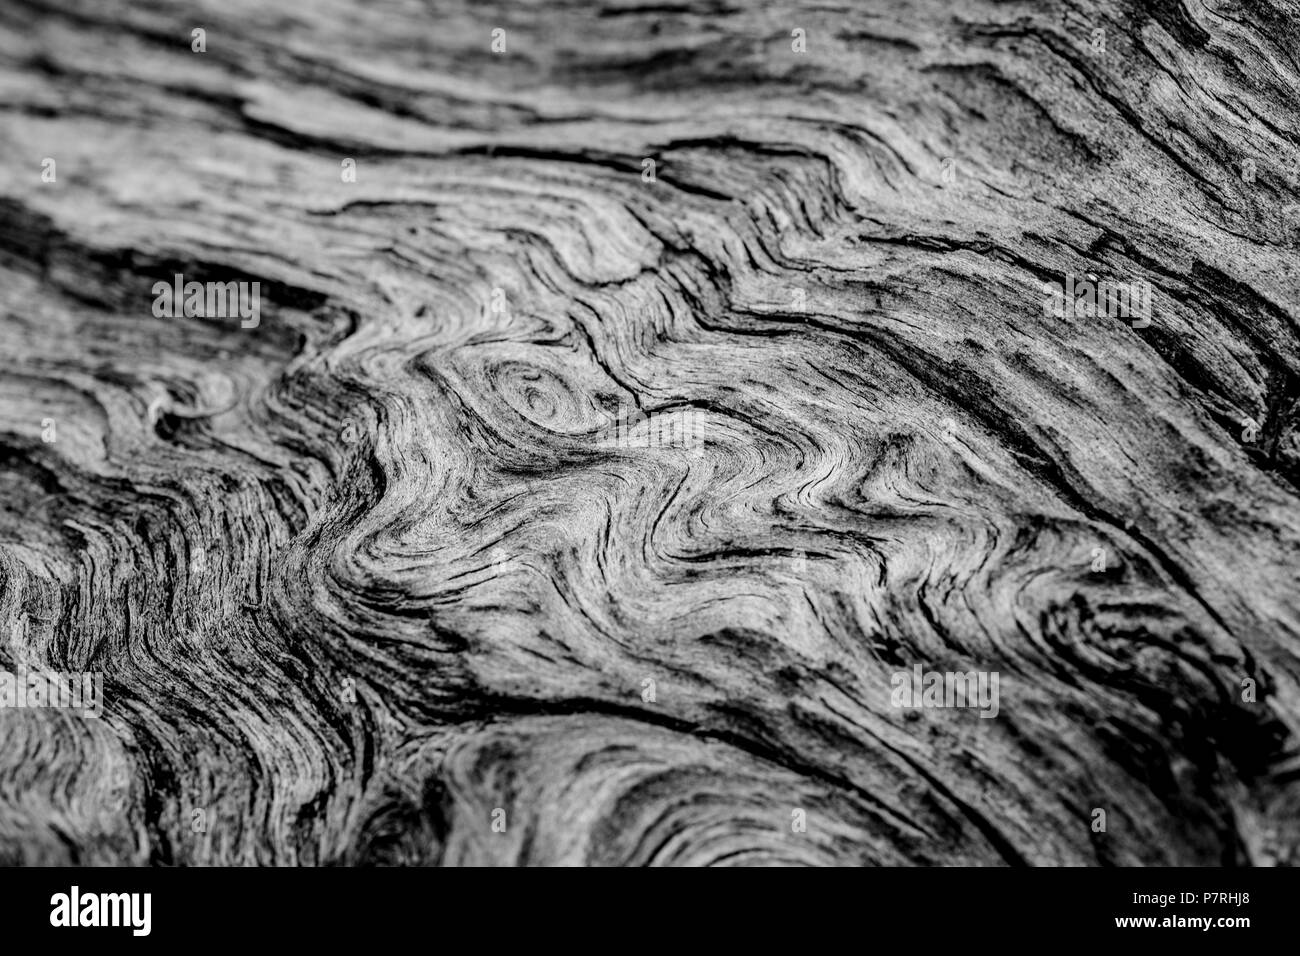 Un gros plan de l'écorce d'un séquoia de Californie géant reflètent les flux de belle et modèles aléatoires les schémas de siècles de croissance et d'évolution. Banque D'Images